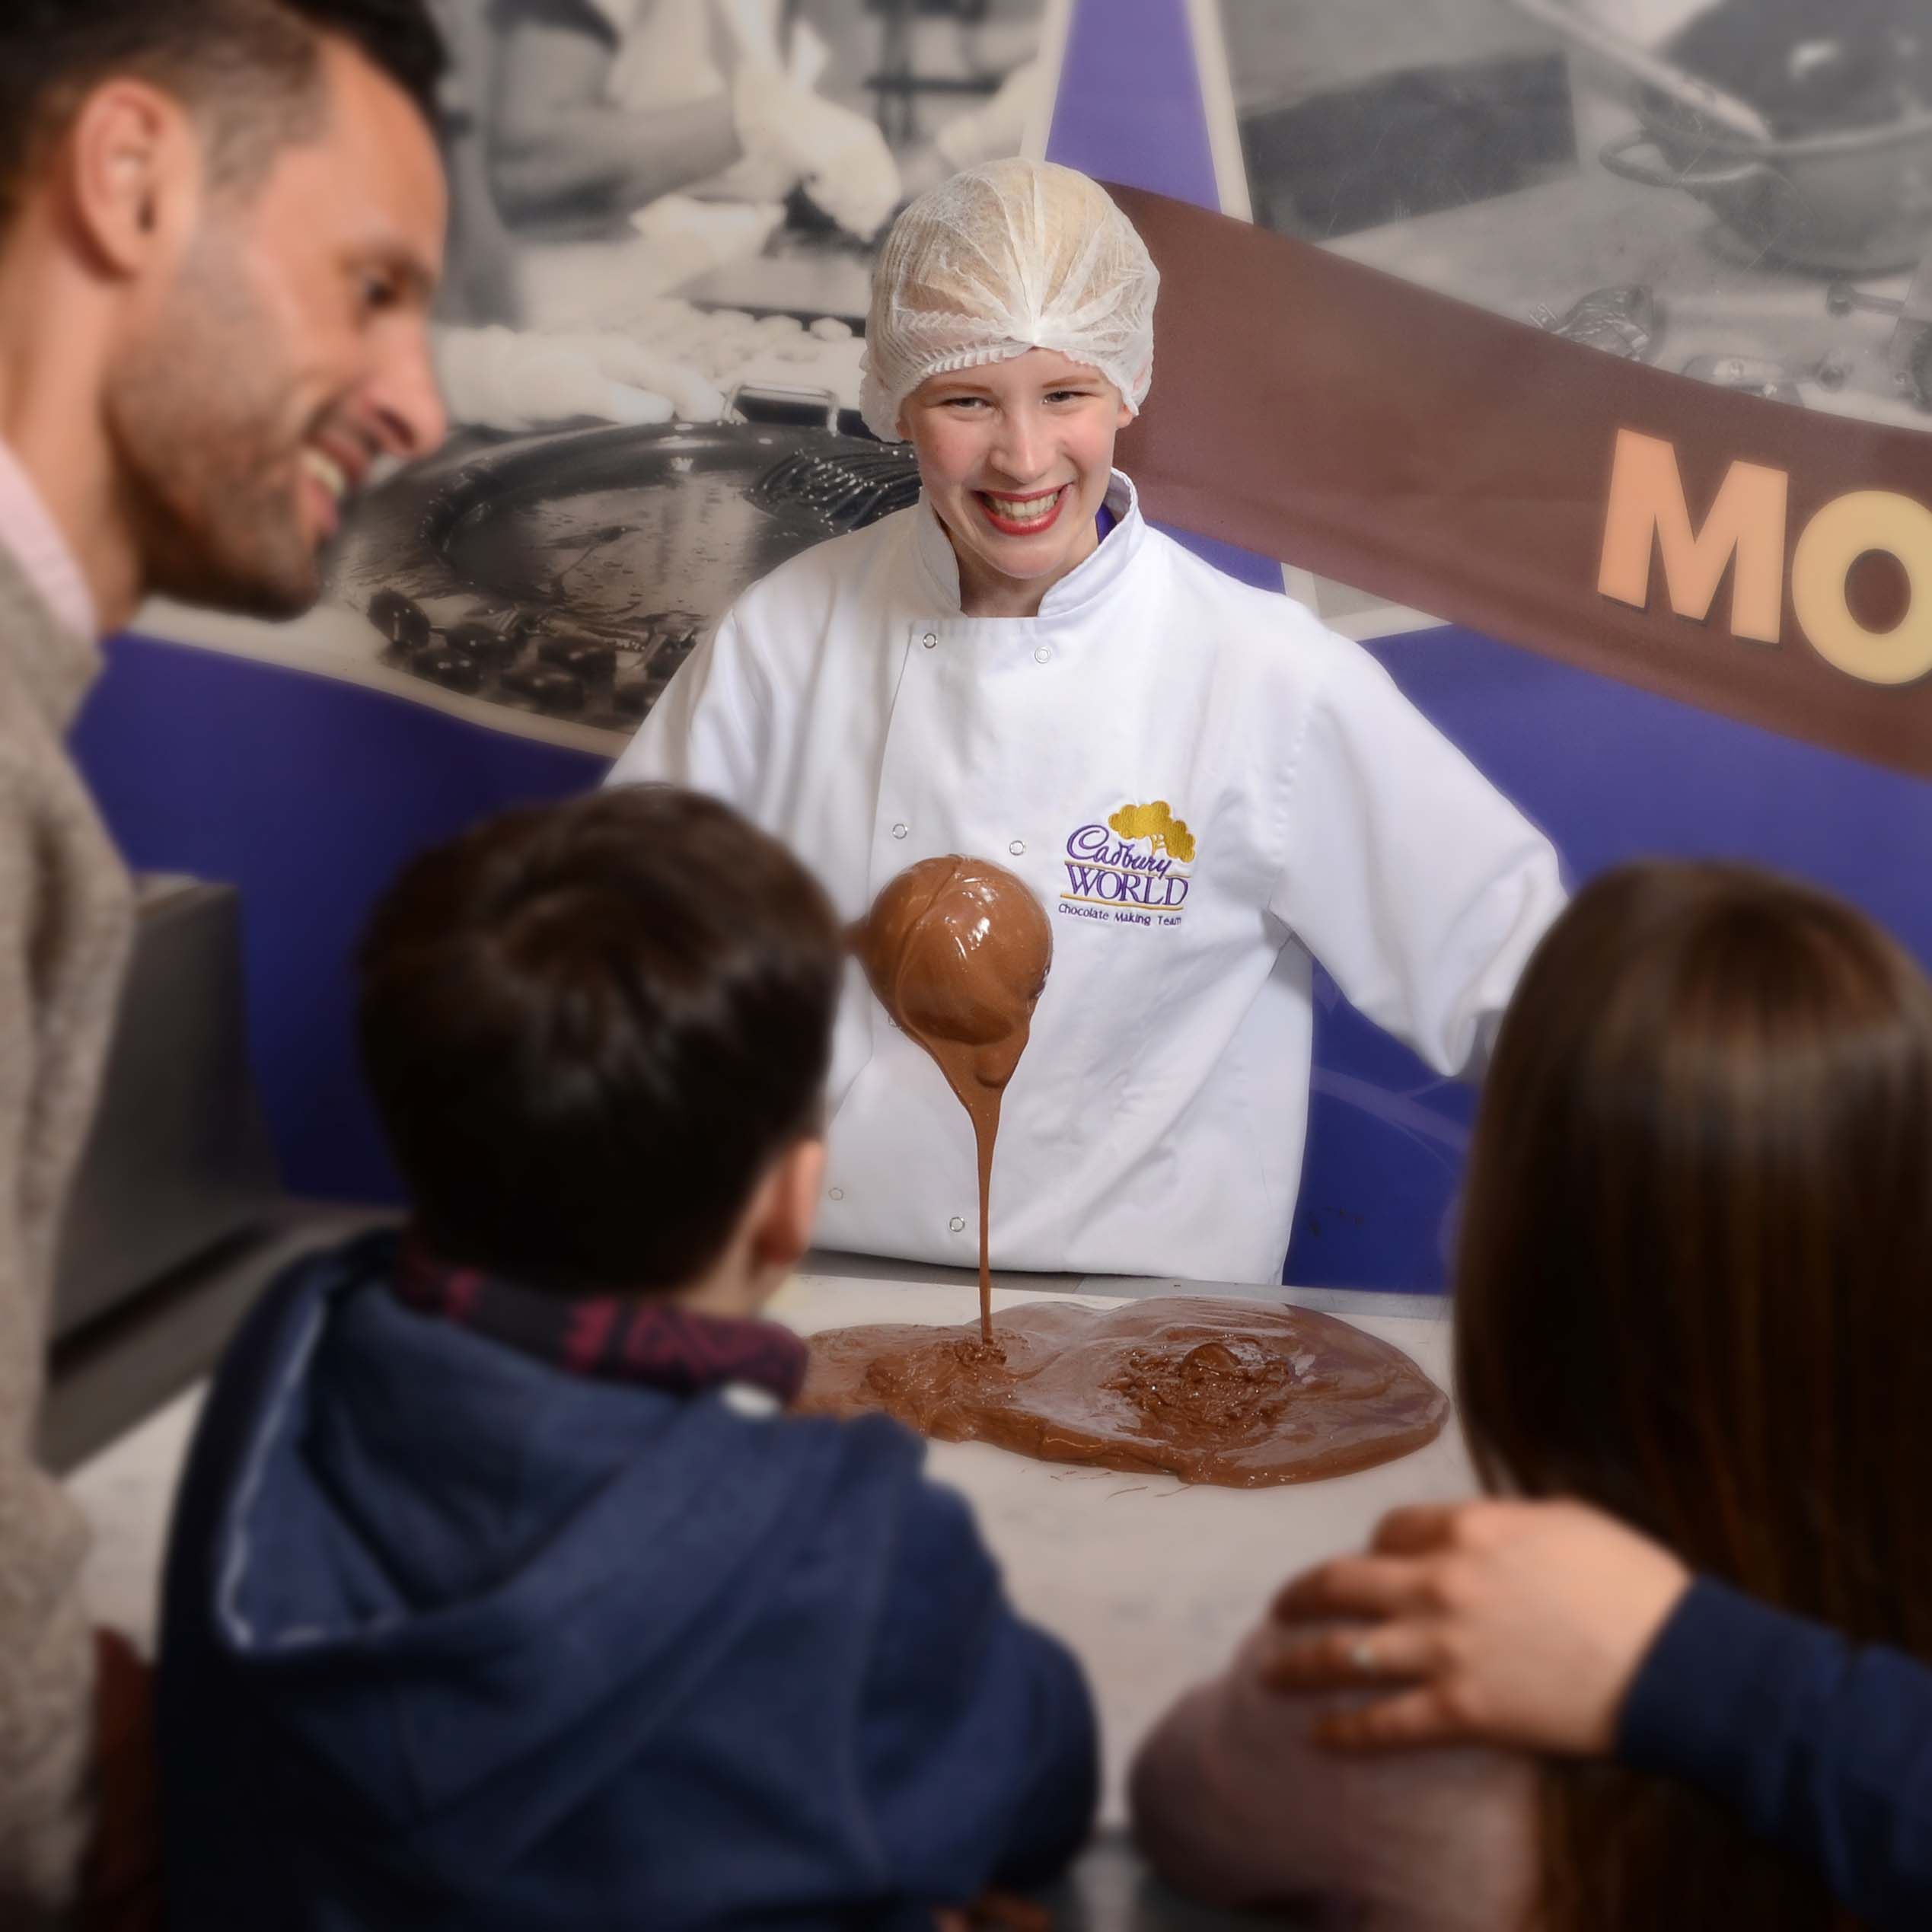 Chocolate Making at Cadbury World